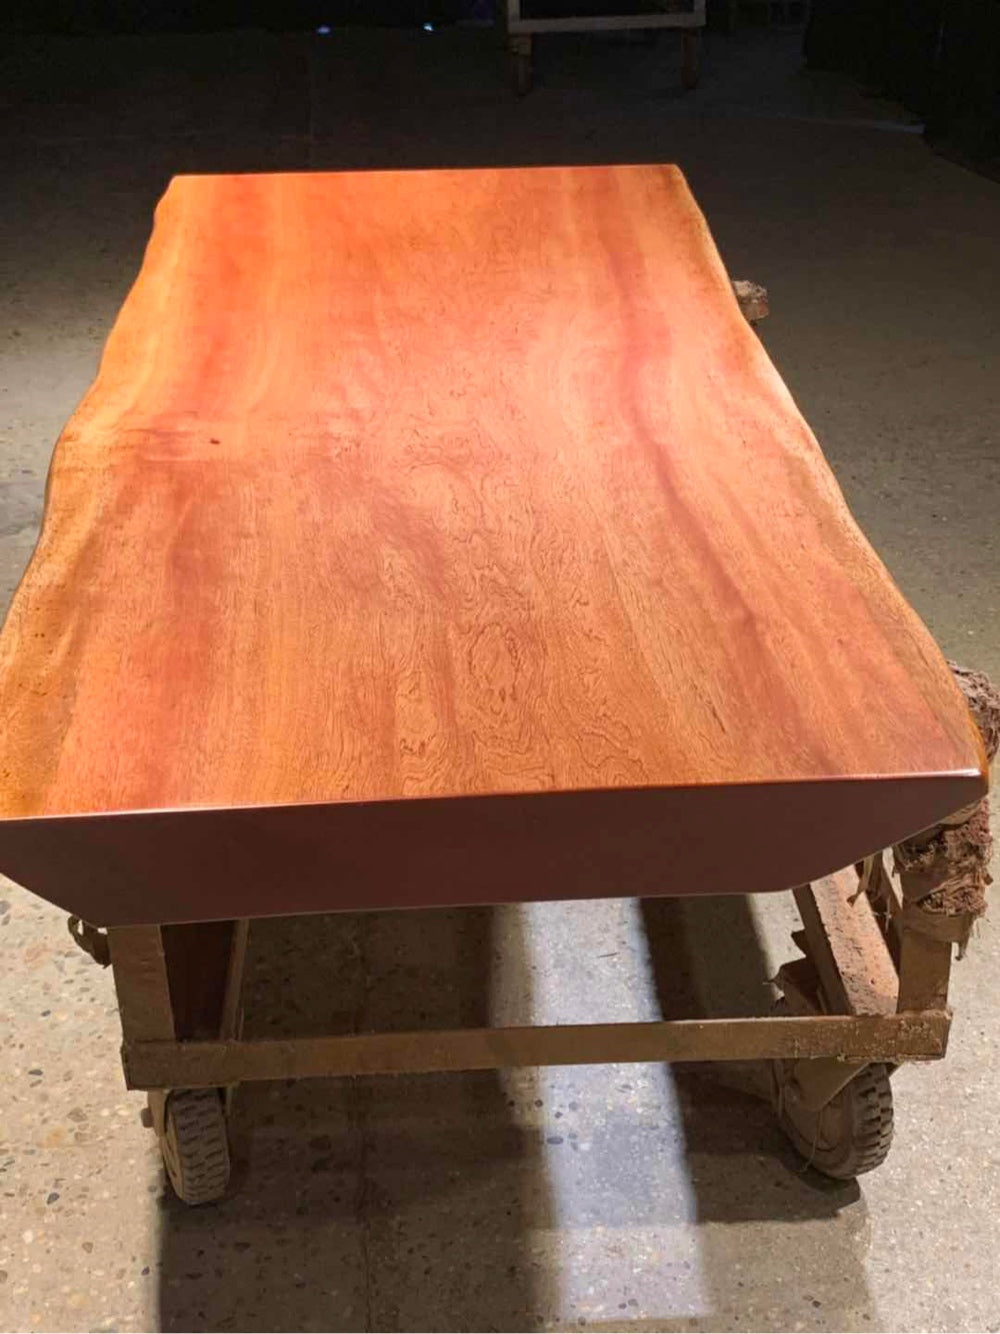 Losa de mesa rosa, <tc>Bintangor</tc> Construcción de mesa de losa de madera